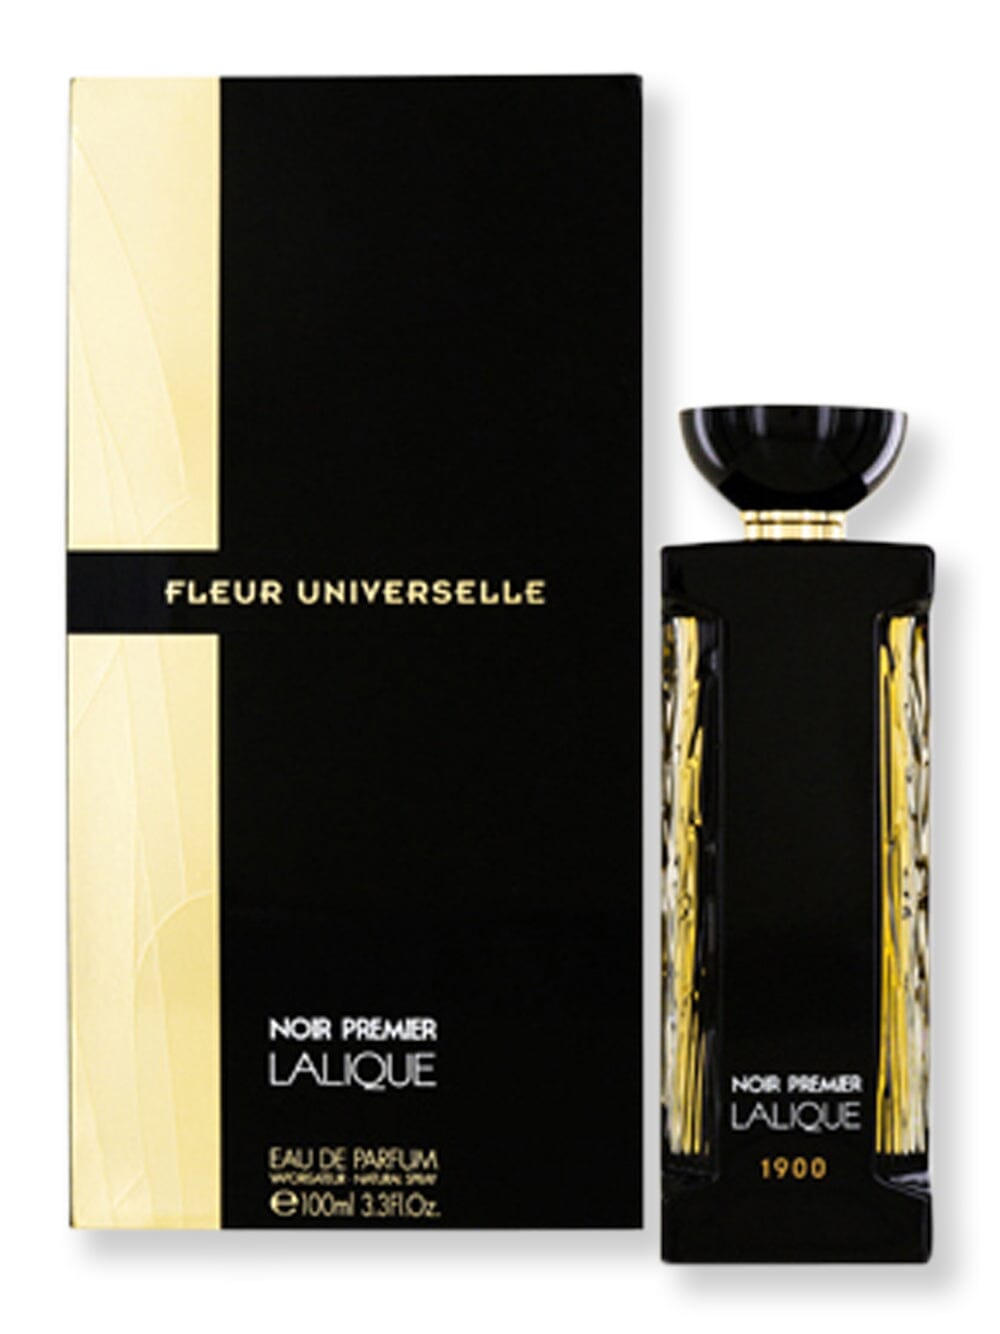 Lalique Lalique Noir Premier Fleur Universelle EDP Spray 3.3 oz100 ml Perfume 